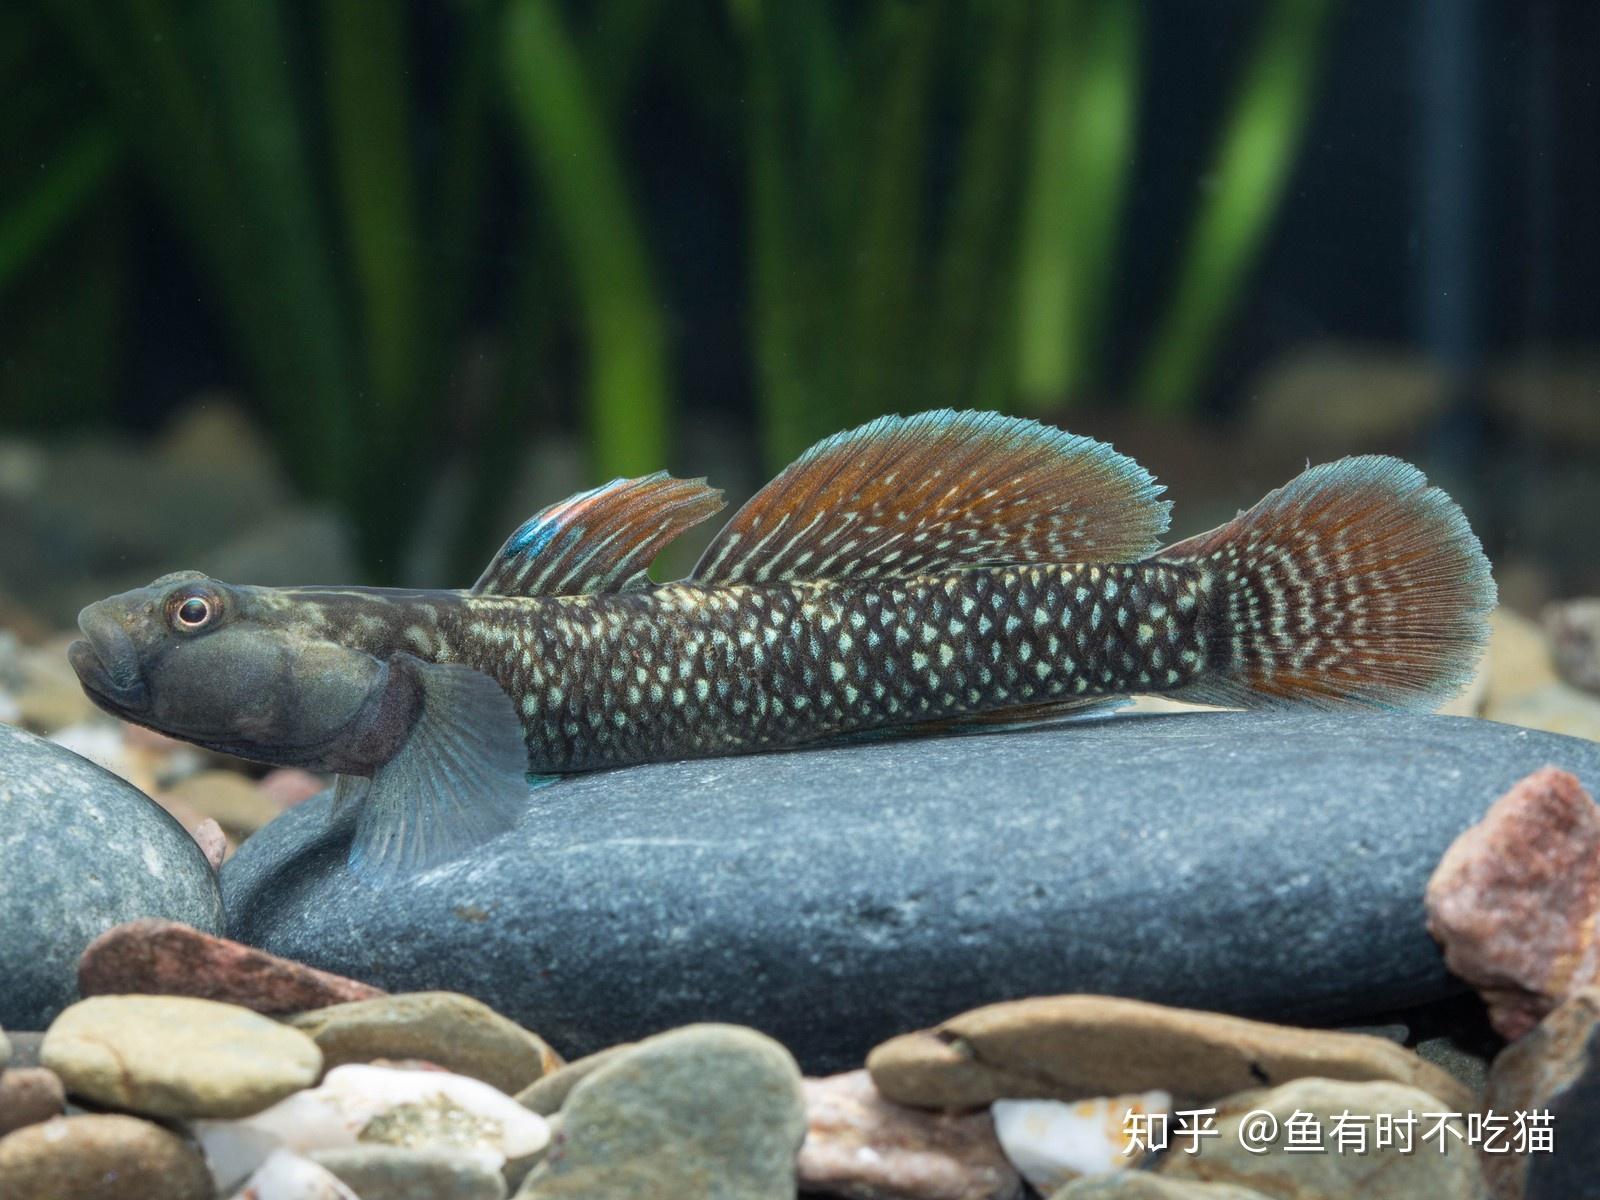 中国原生鱼:吻虾虎鱼图鉴